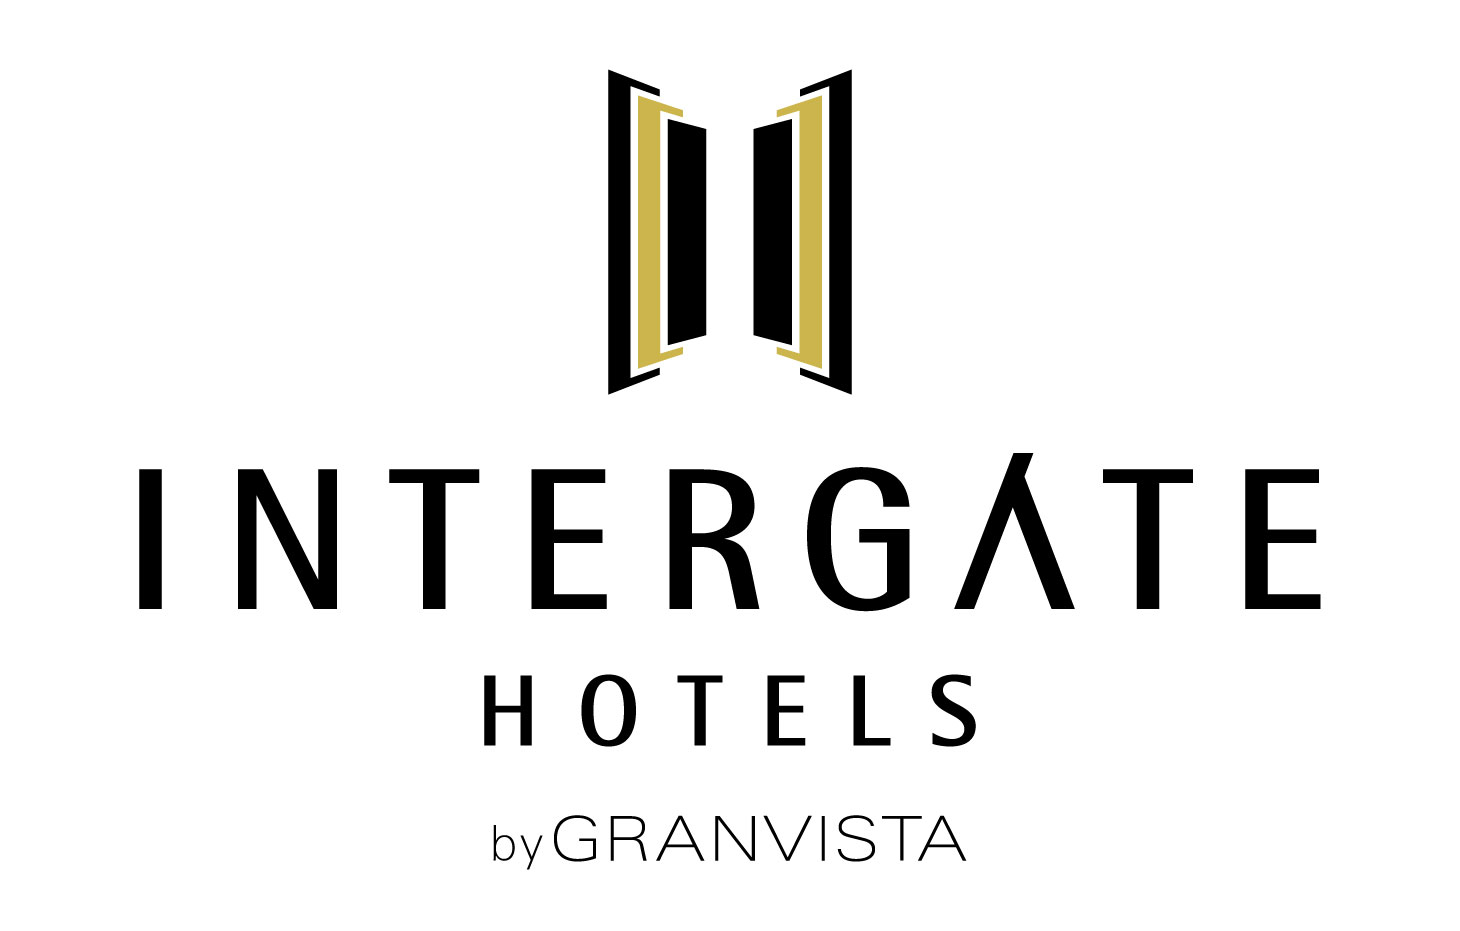 Intergate Hotels インターゲートホテルズ By Granvista 誕生 All For Tomorrow 最高の朝 をお届けするホテル グランビスタ ホテル リゾートのプレスリリース